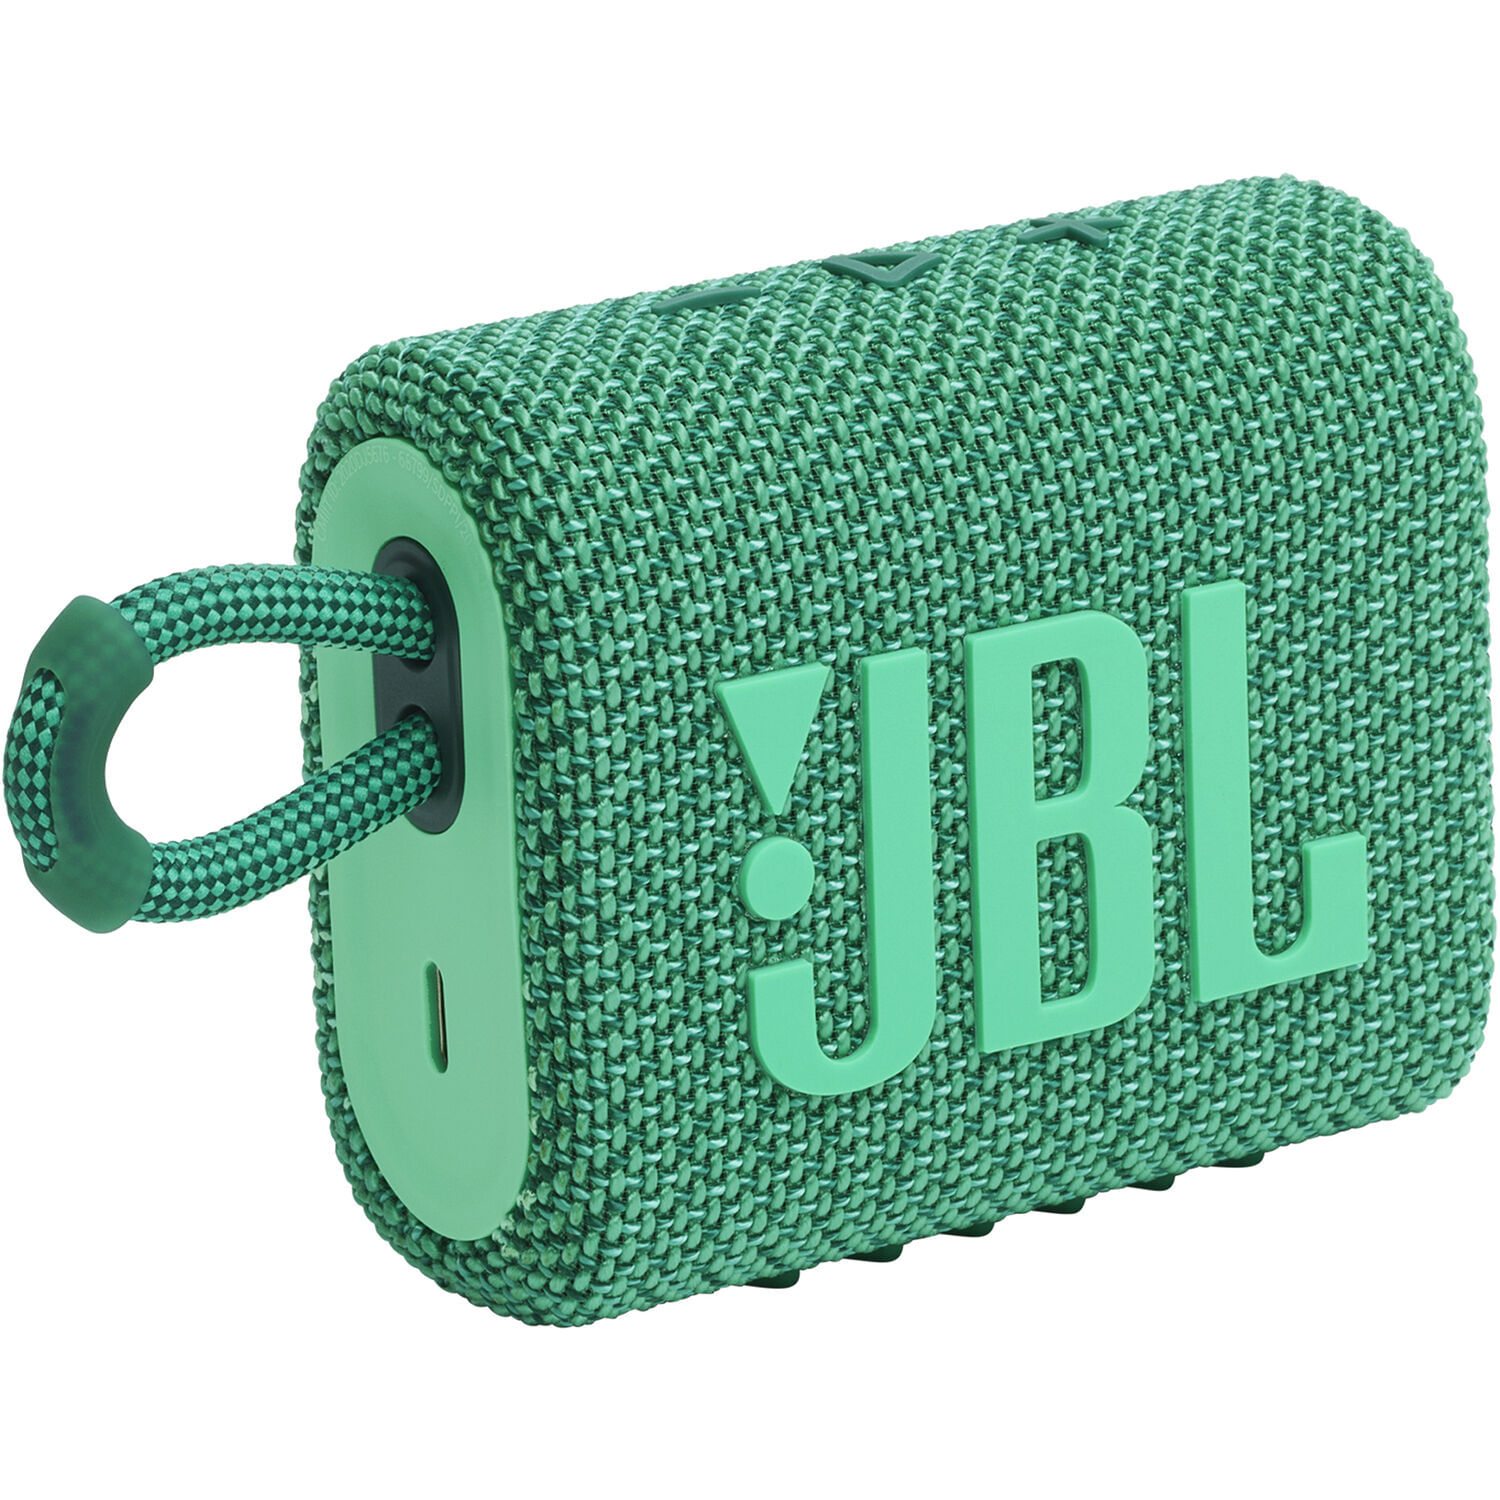 Altavoz Bluetooth Portátil Impermeable Jbl Go 3 Eco Verde Bosque